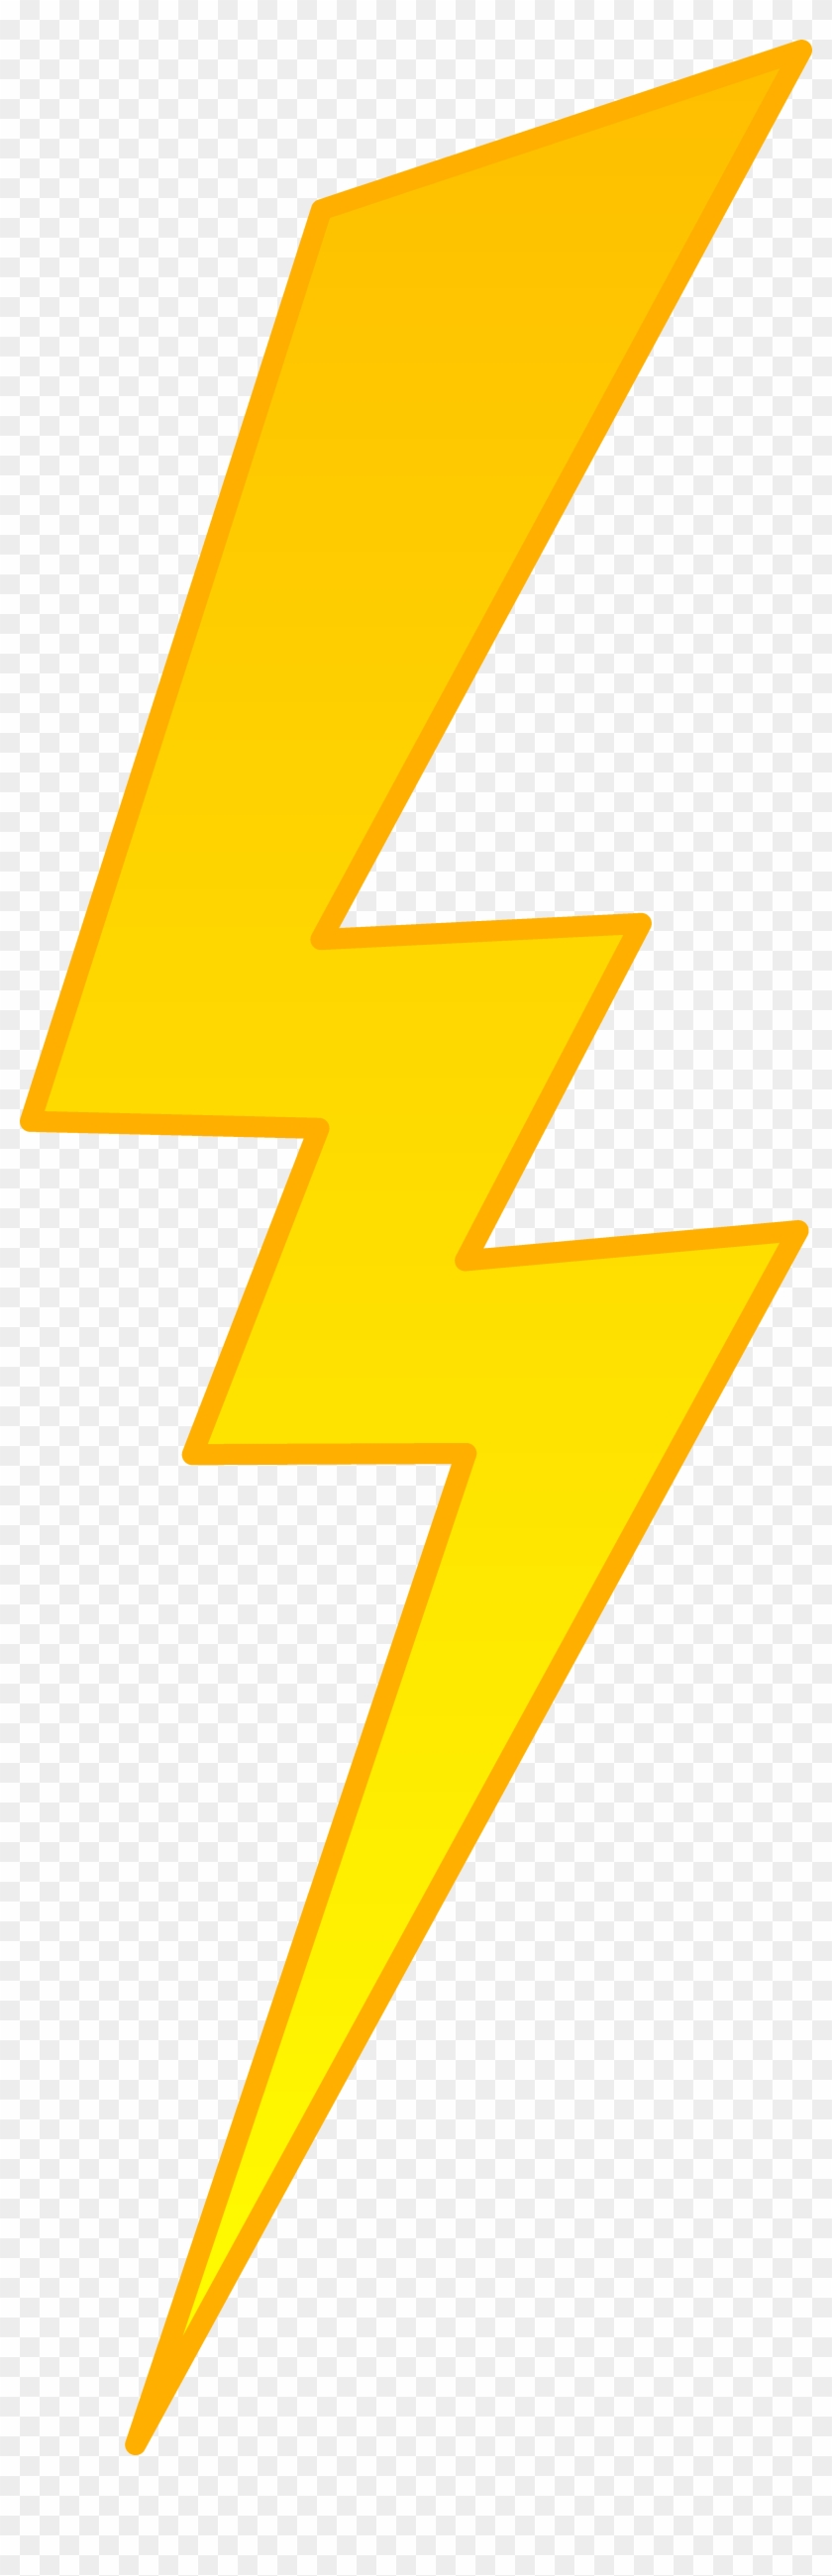 Golden Lightning Bolt Symbol Free Clip Art - Drawing #639982